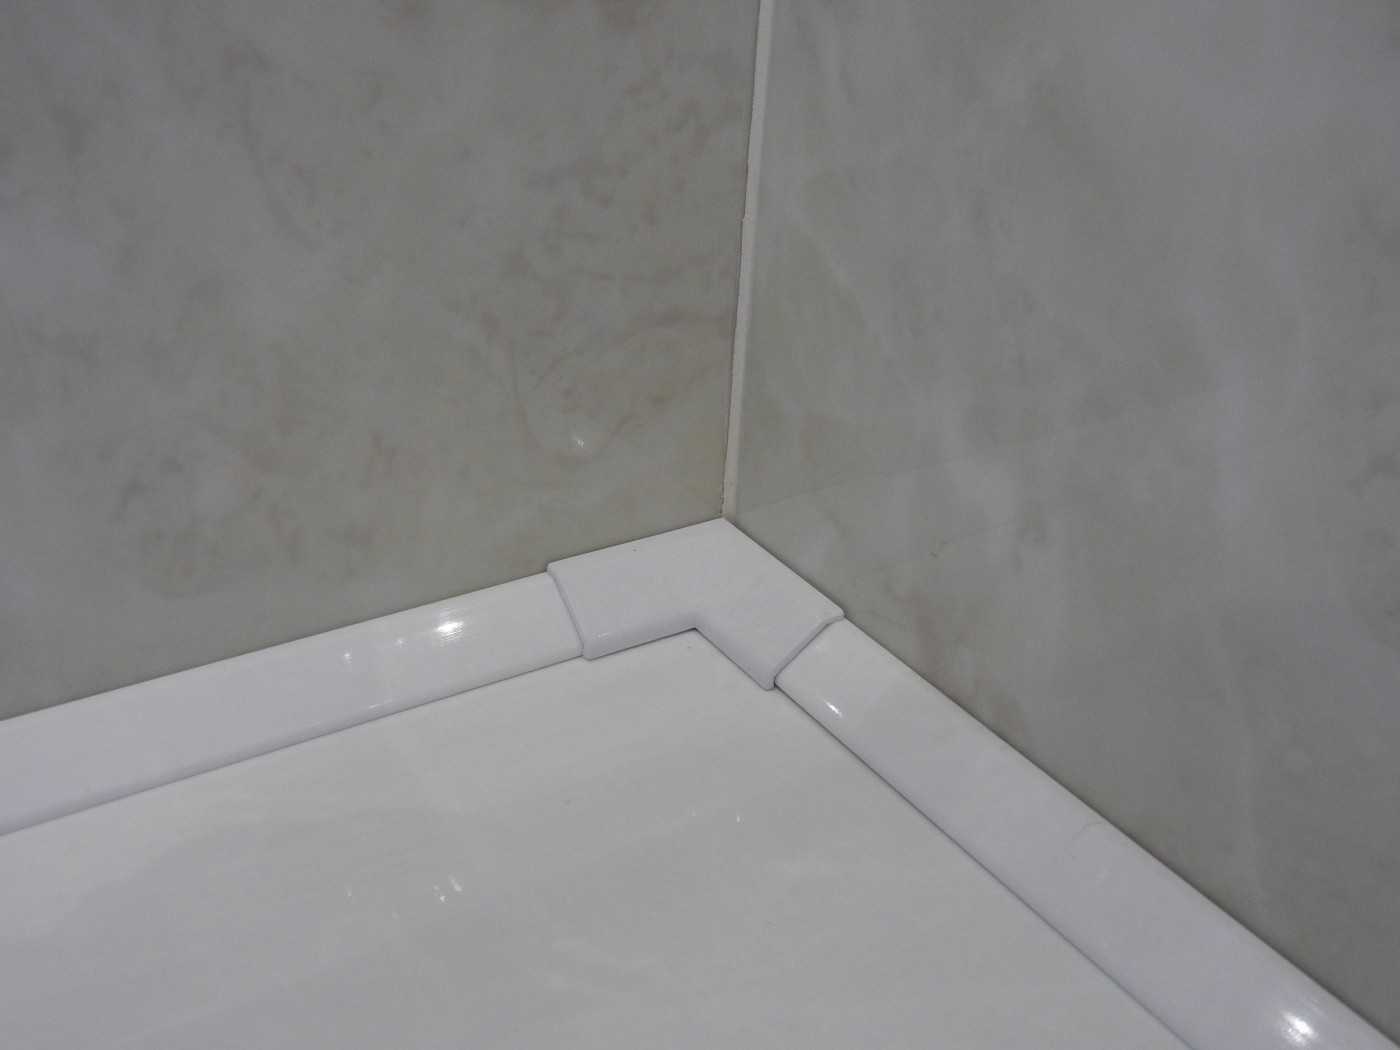 Бордюрная лента для ванной: простой, но надежный способ герметизации стыков